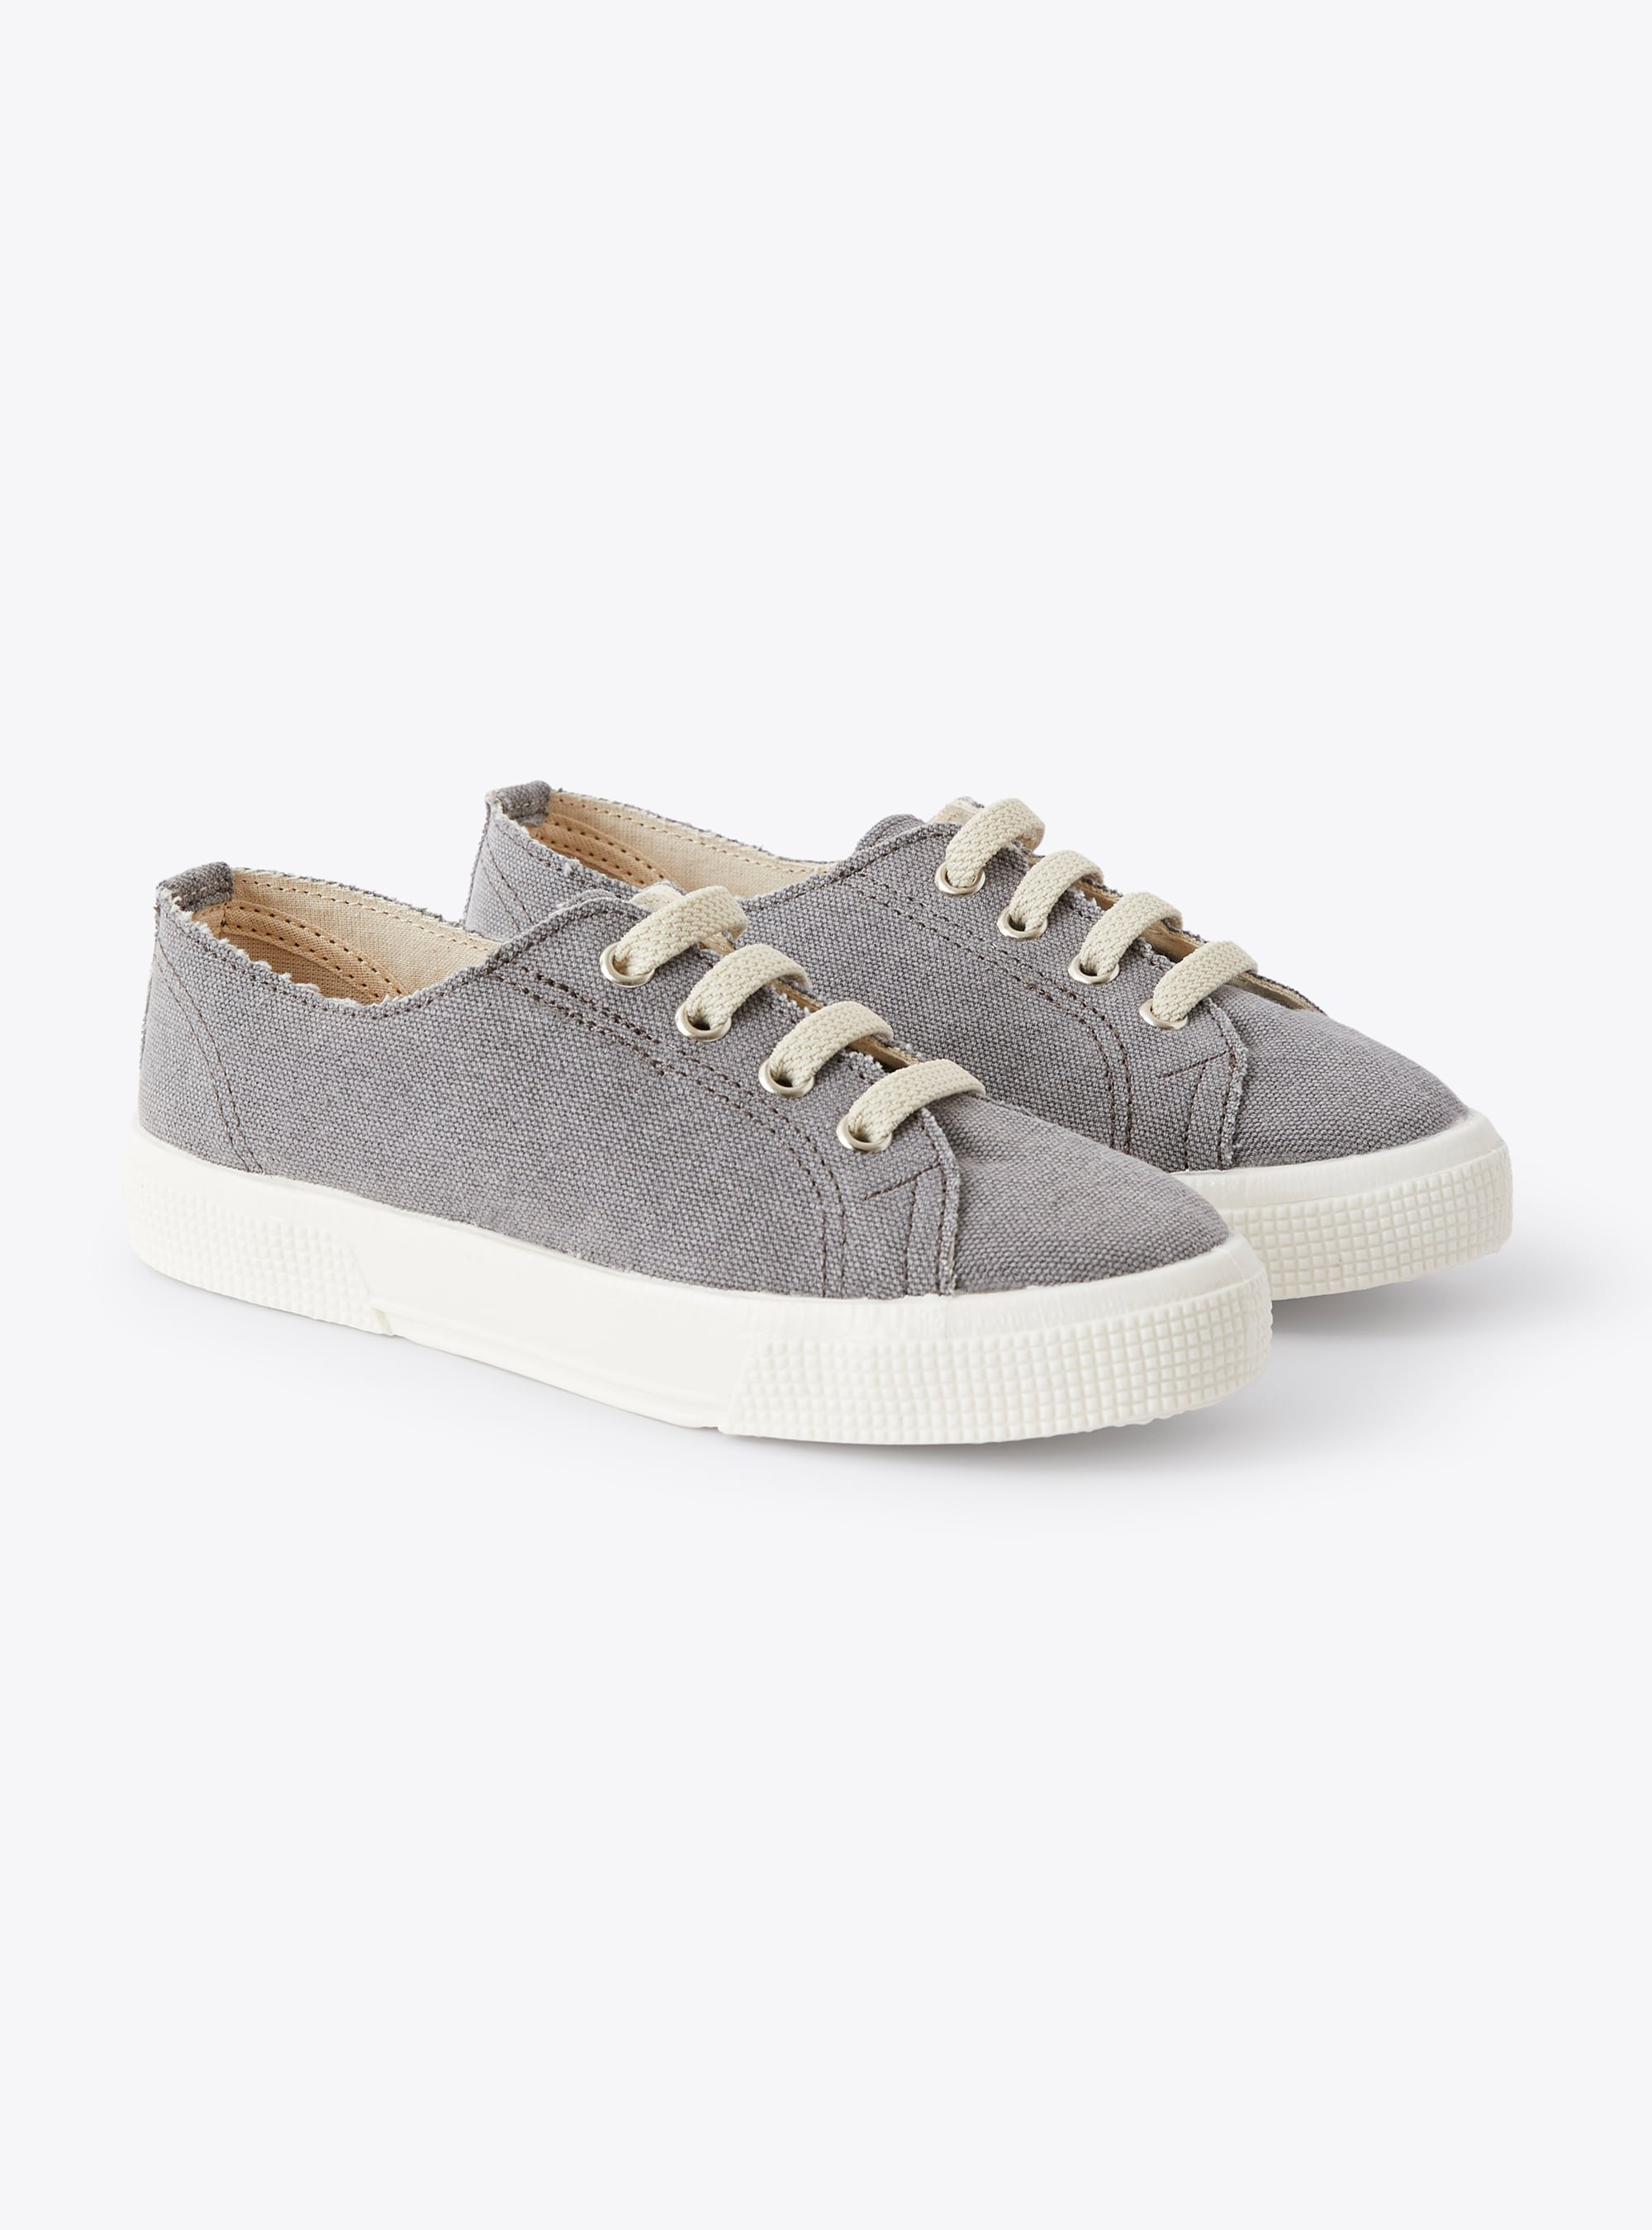 Sneakers en toile grise avec lacets - Chaussures - Il Gufo